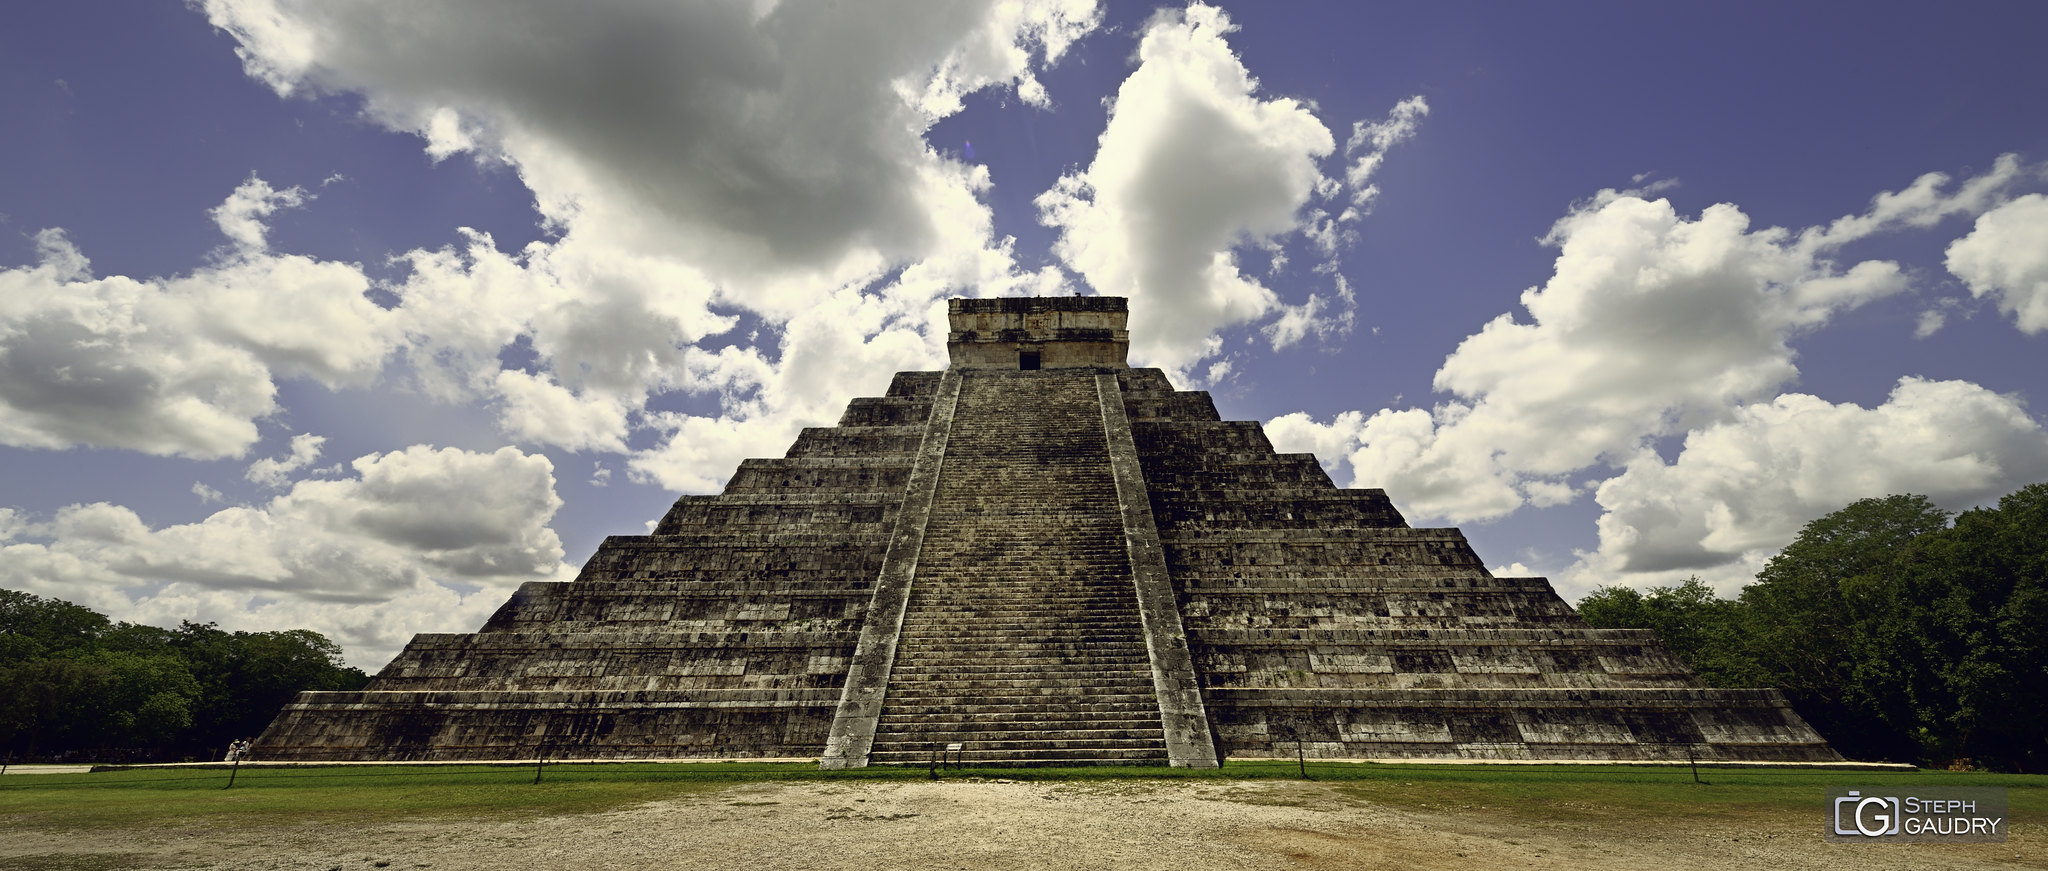 Chichen Itza - El Castillo (pyramide de Kukulcán)